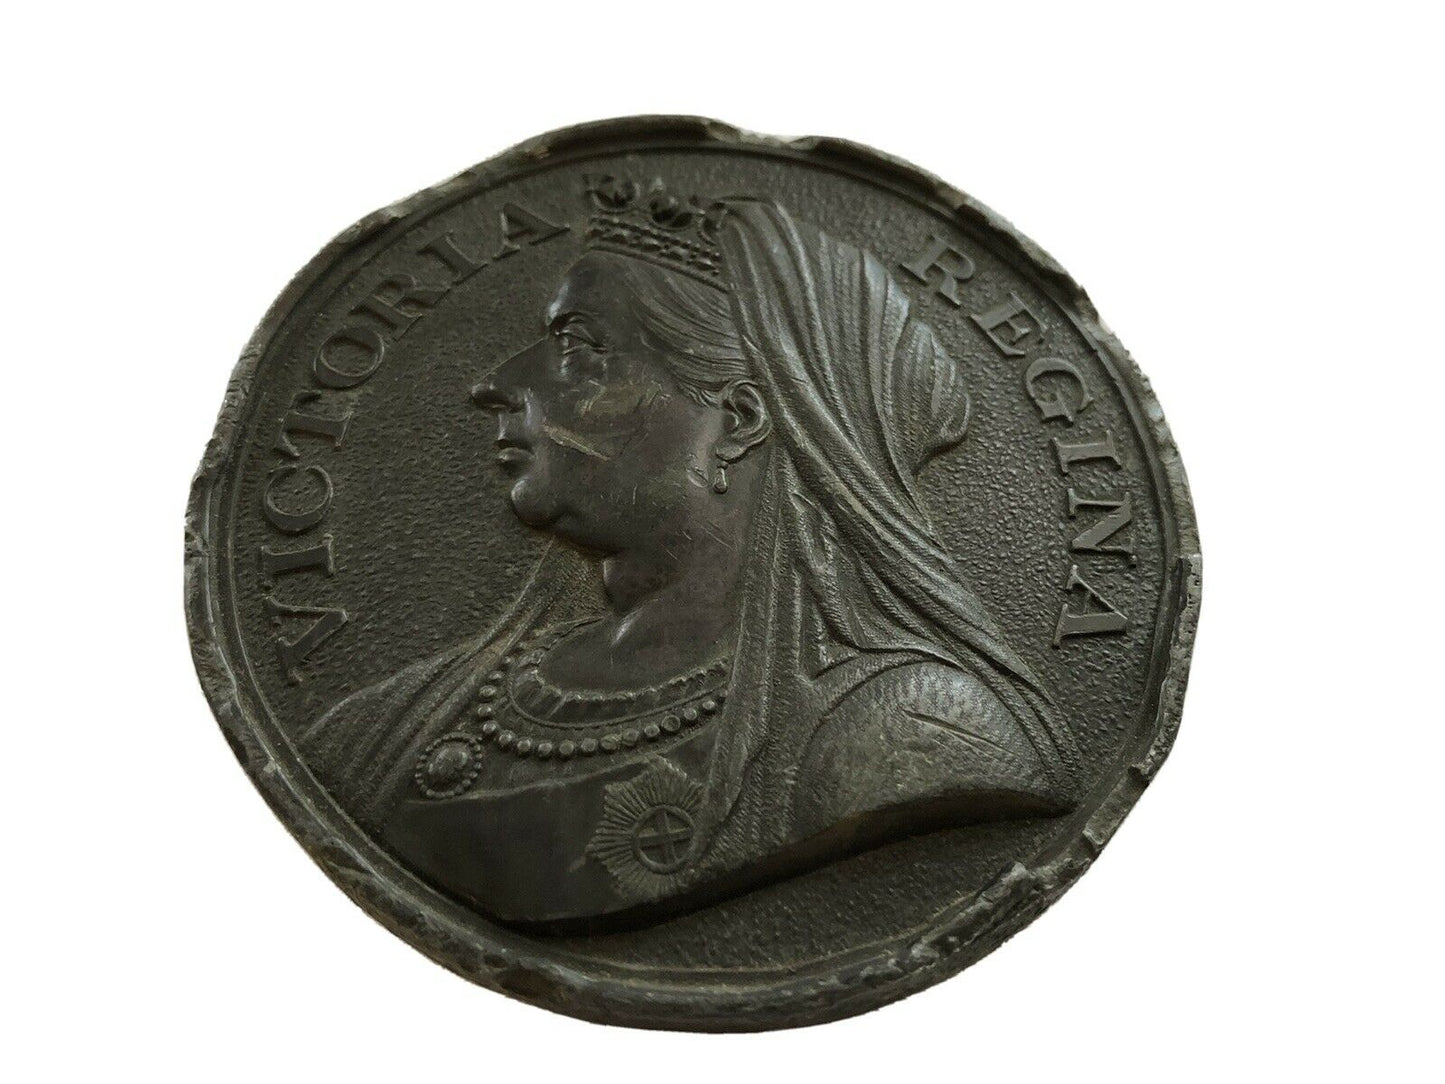 Victoria Regina 1837-1897 large medallion